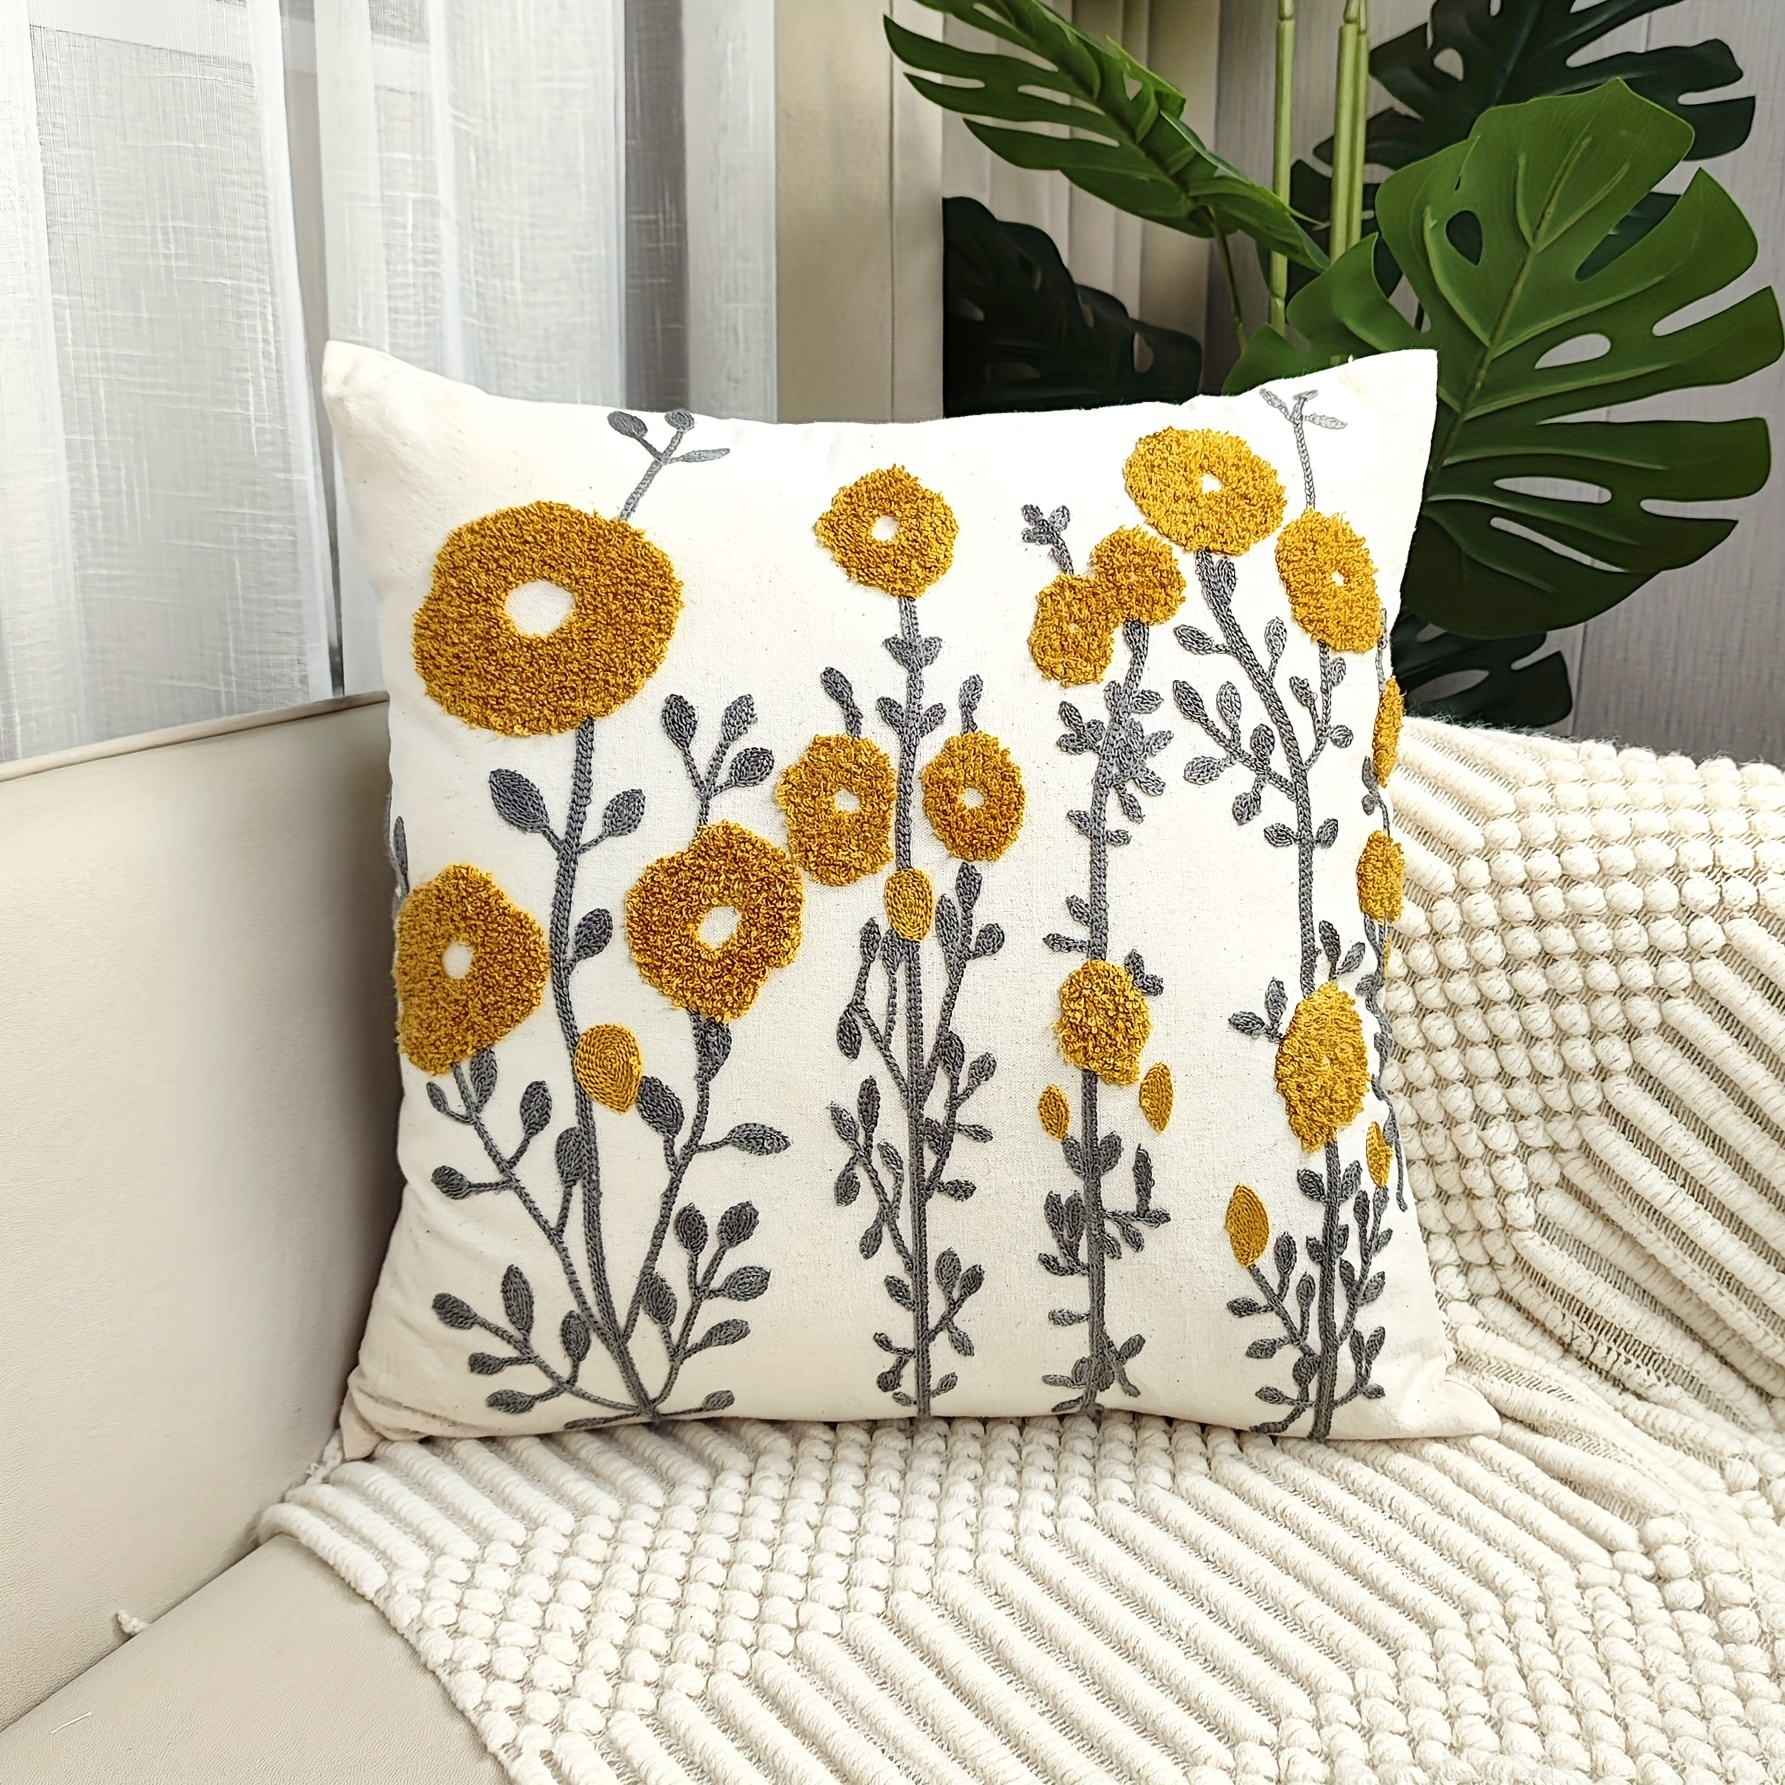 TangDepot Decorative Handmade Cotton Throw Pillow Covers /Pillow